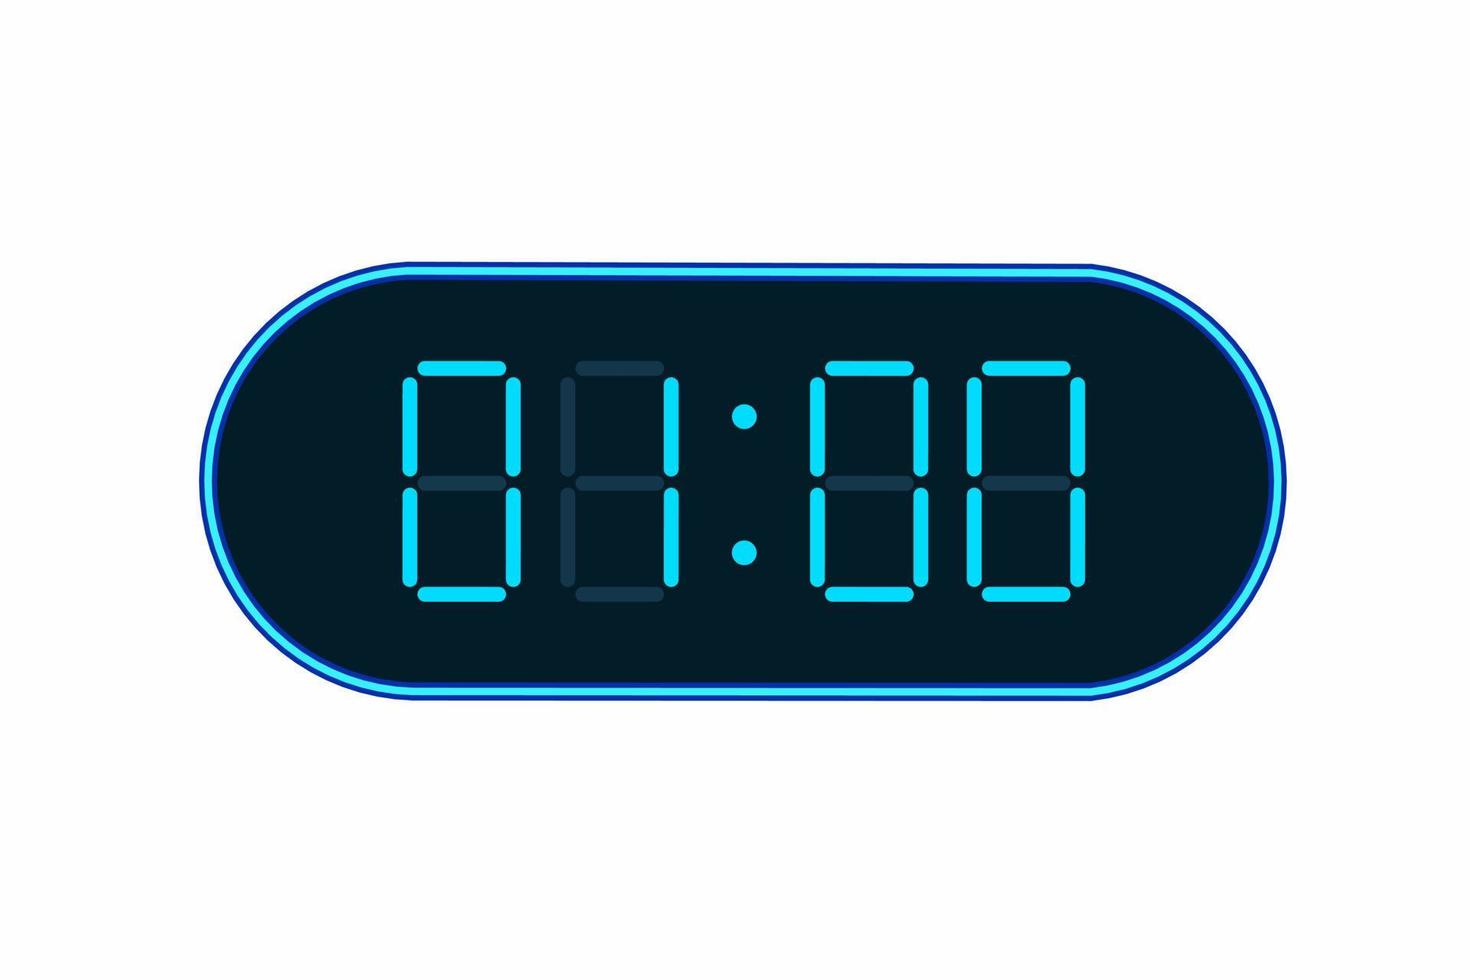 illustrazione piatta vettoriale di un orologio digitale che mostra 01:00. illustrazione di allarme con numero digitale design. icona dell'orologio per ora, orologio, segnali di allarme